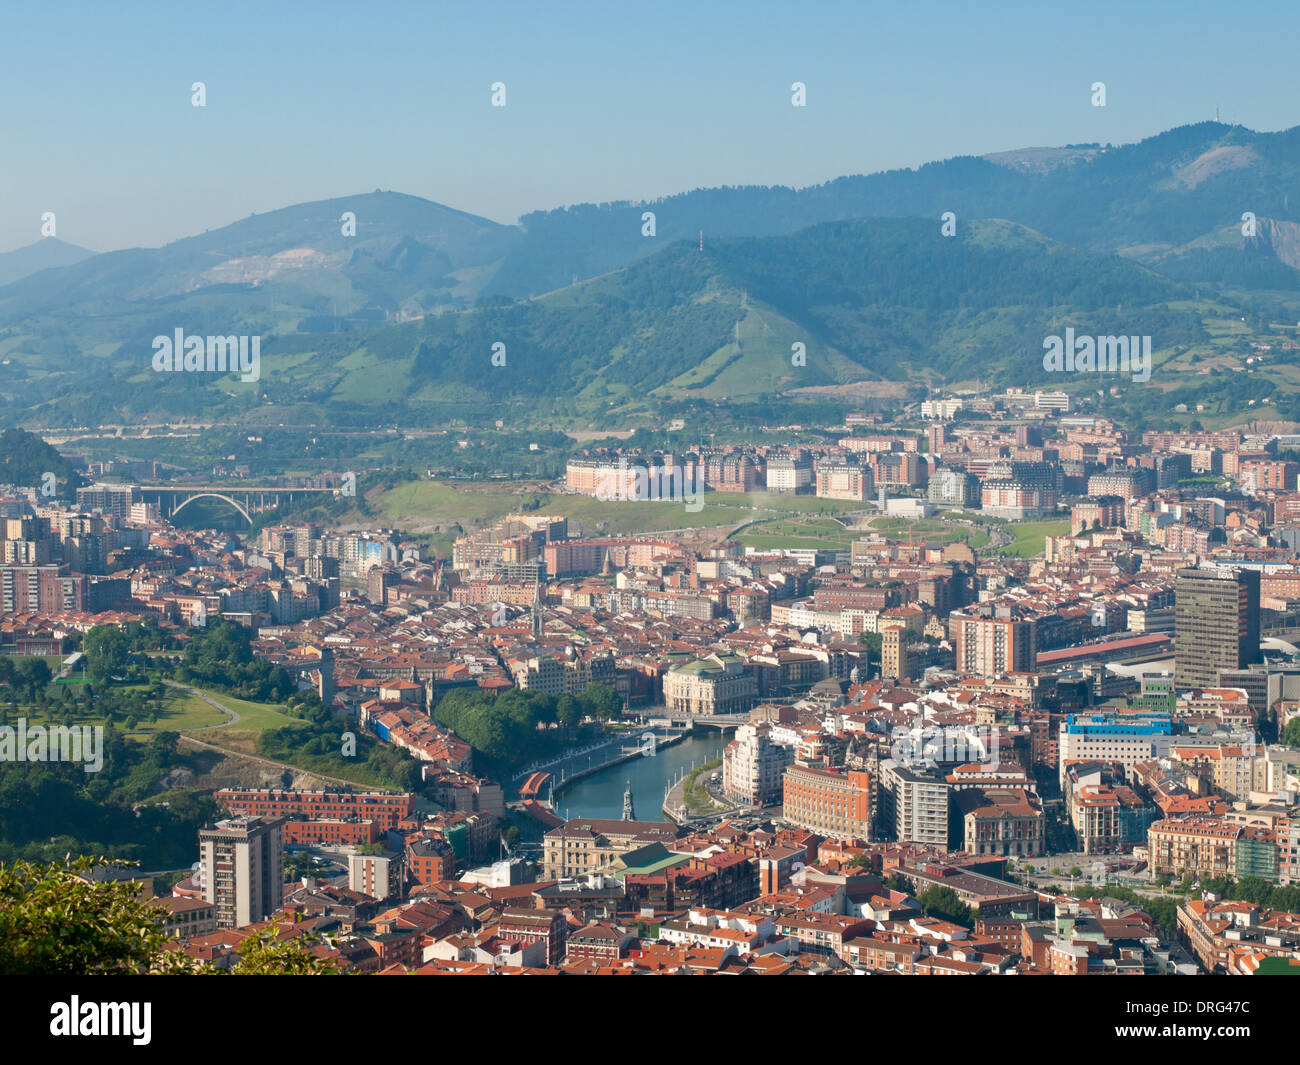 Ein Blick auf Bilbao, Spanien, an einem Sommer, etwas trüben Tag gesehen vom Mount Artxanda (Artxanda Hügel). Stockfoto